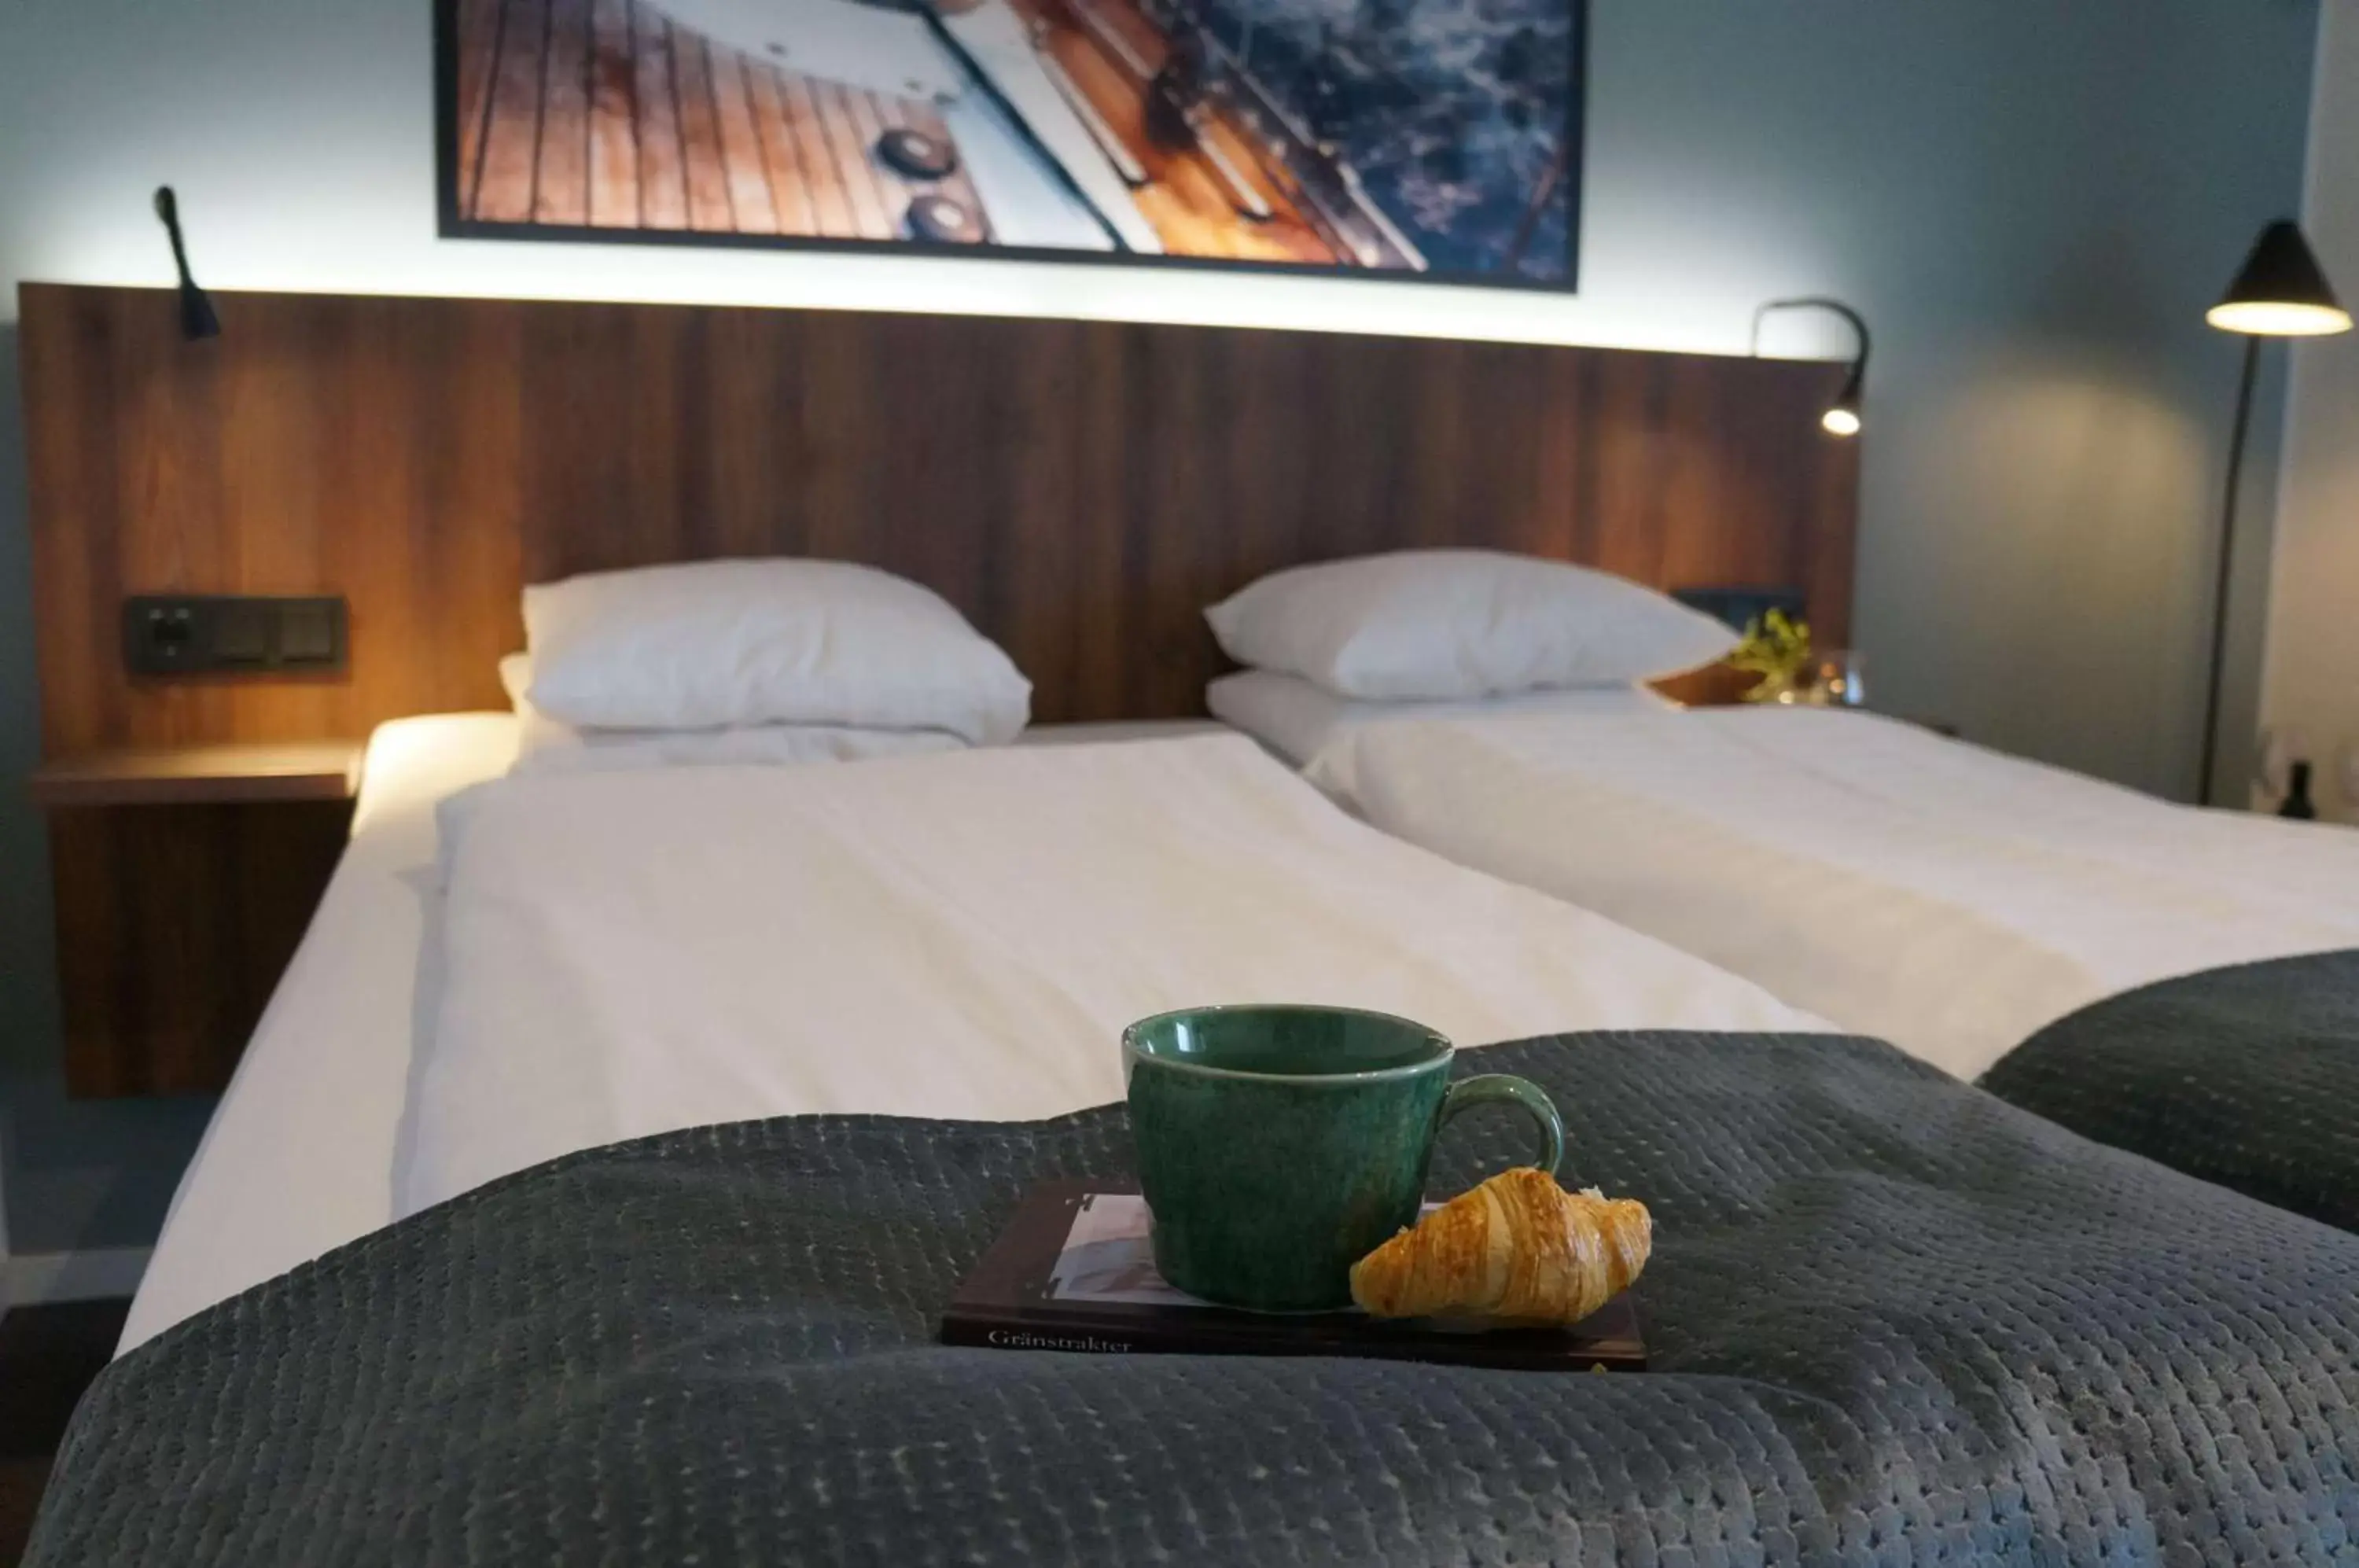 Bedroom, Bed in Best Western Hotel Corallen